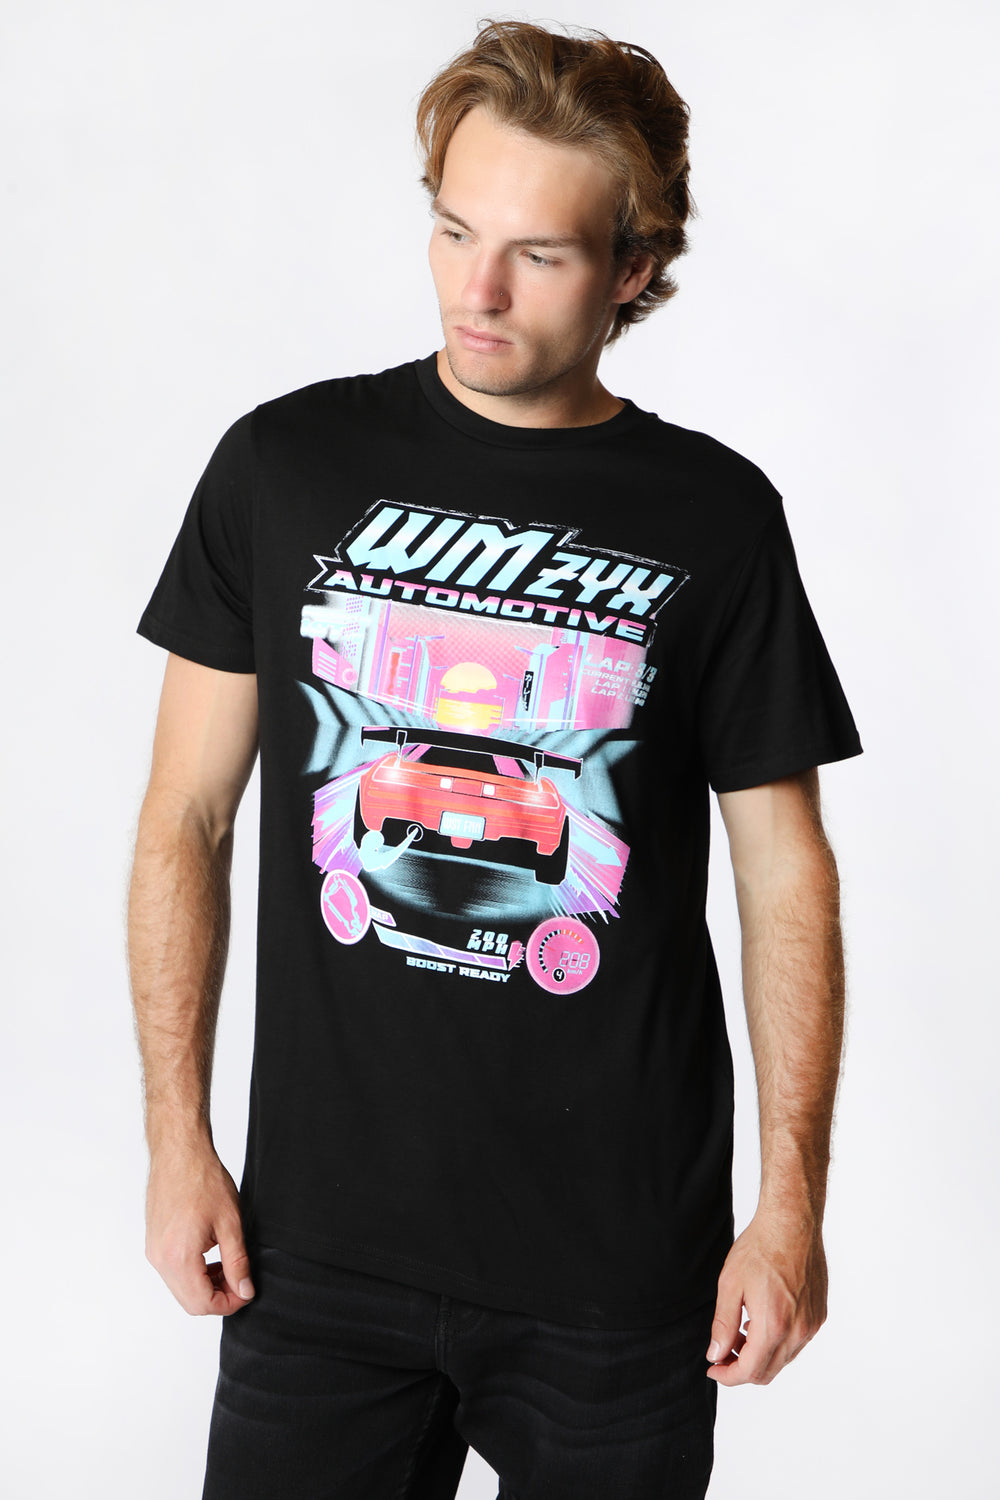 T-Shirt Imprimé Automotive Racing Homme Noir